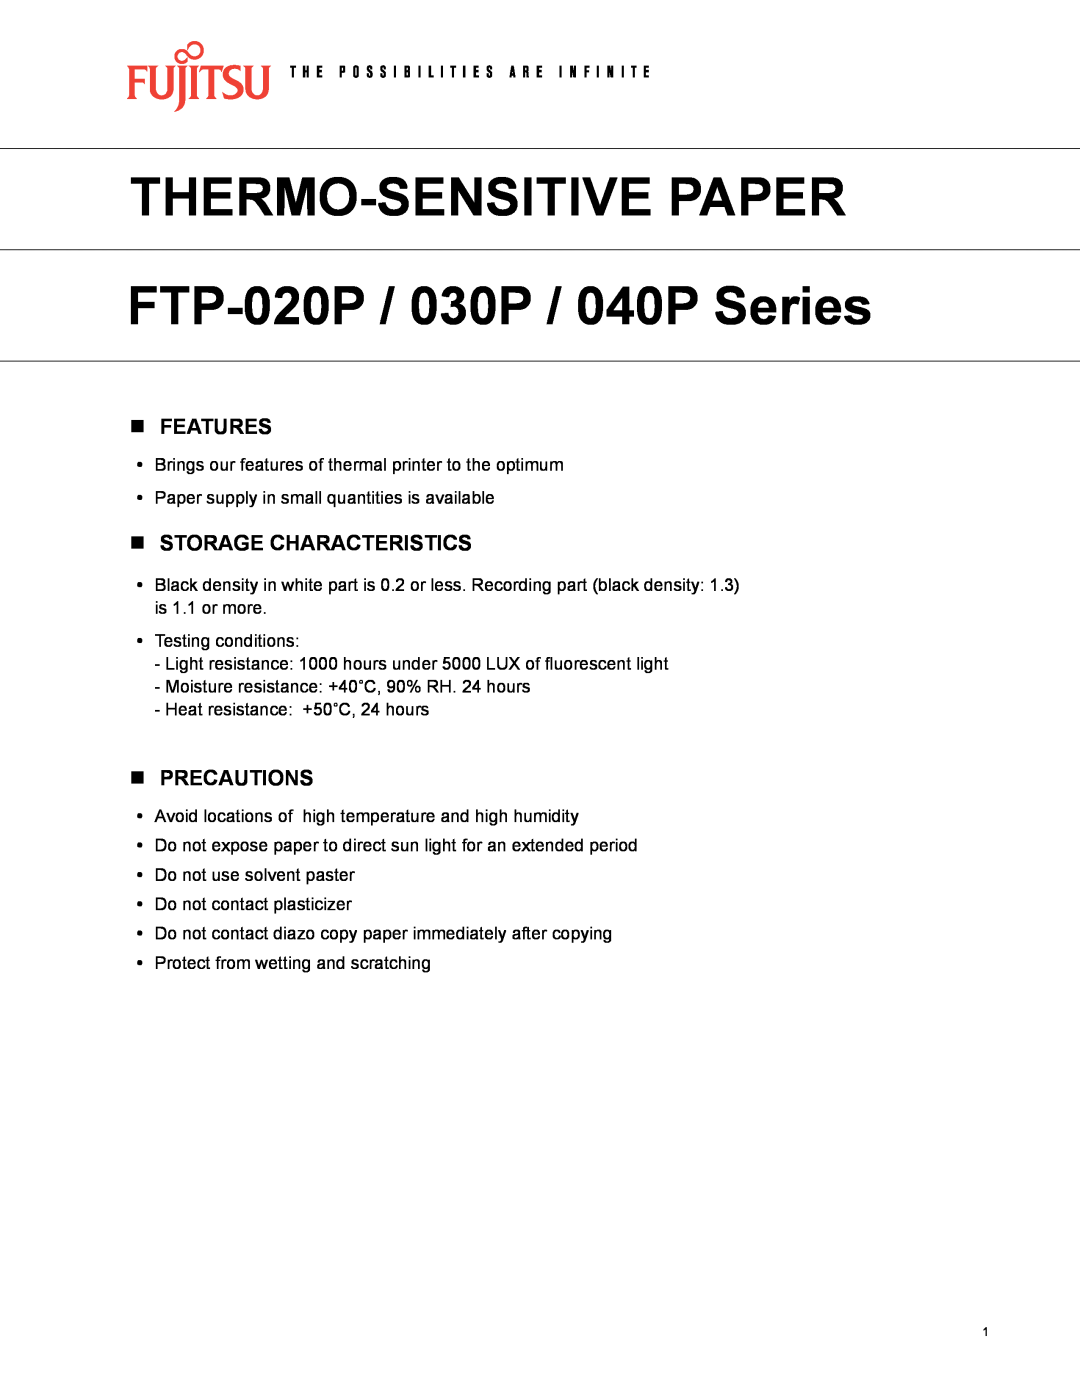 Fujitsu FTP-030P, FTP-020P, FTP-040P manual nFEATURES, nStorage characteristics, nprecautions, Thermo-Sensitivepaper 